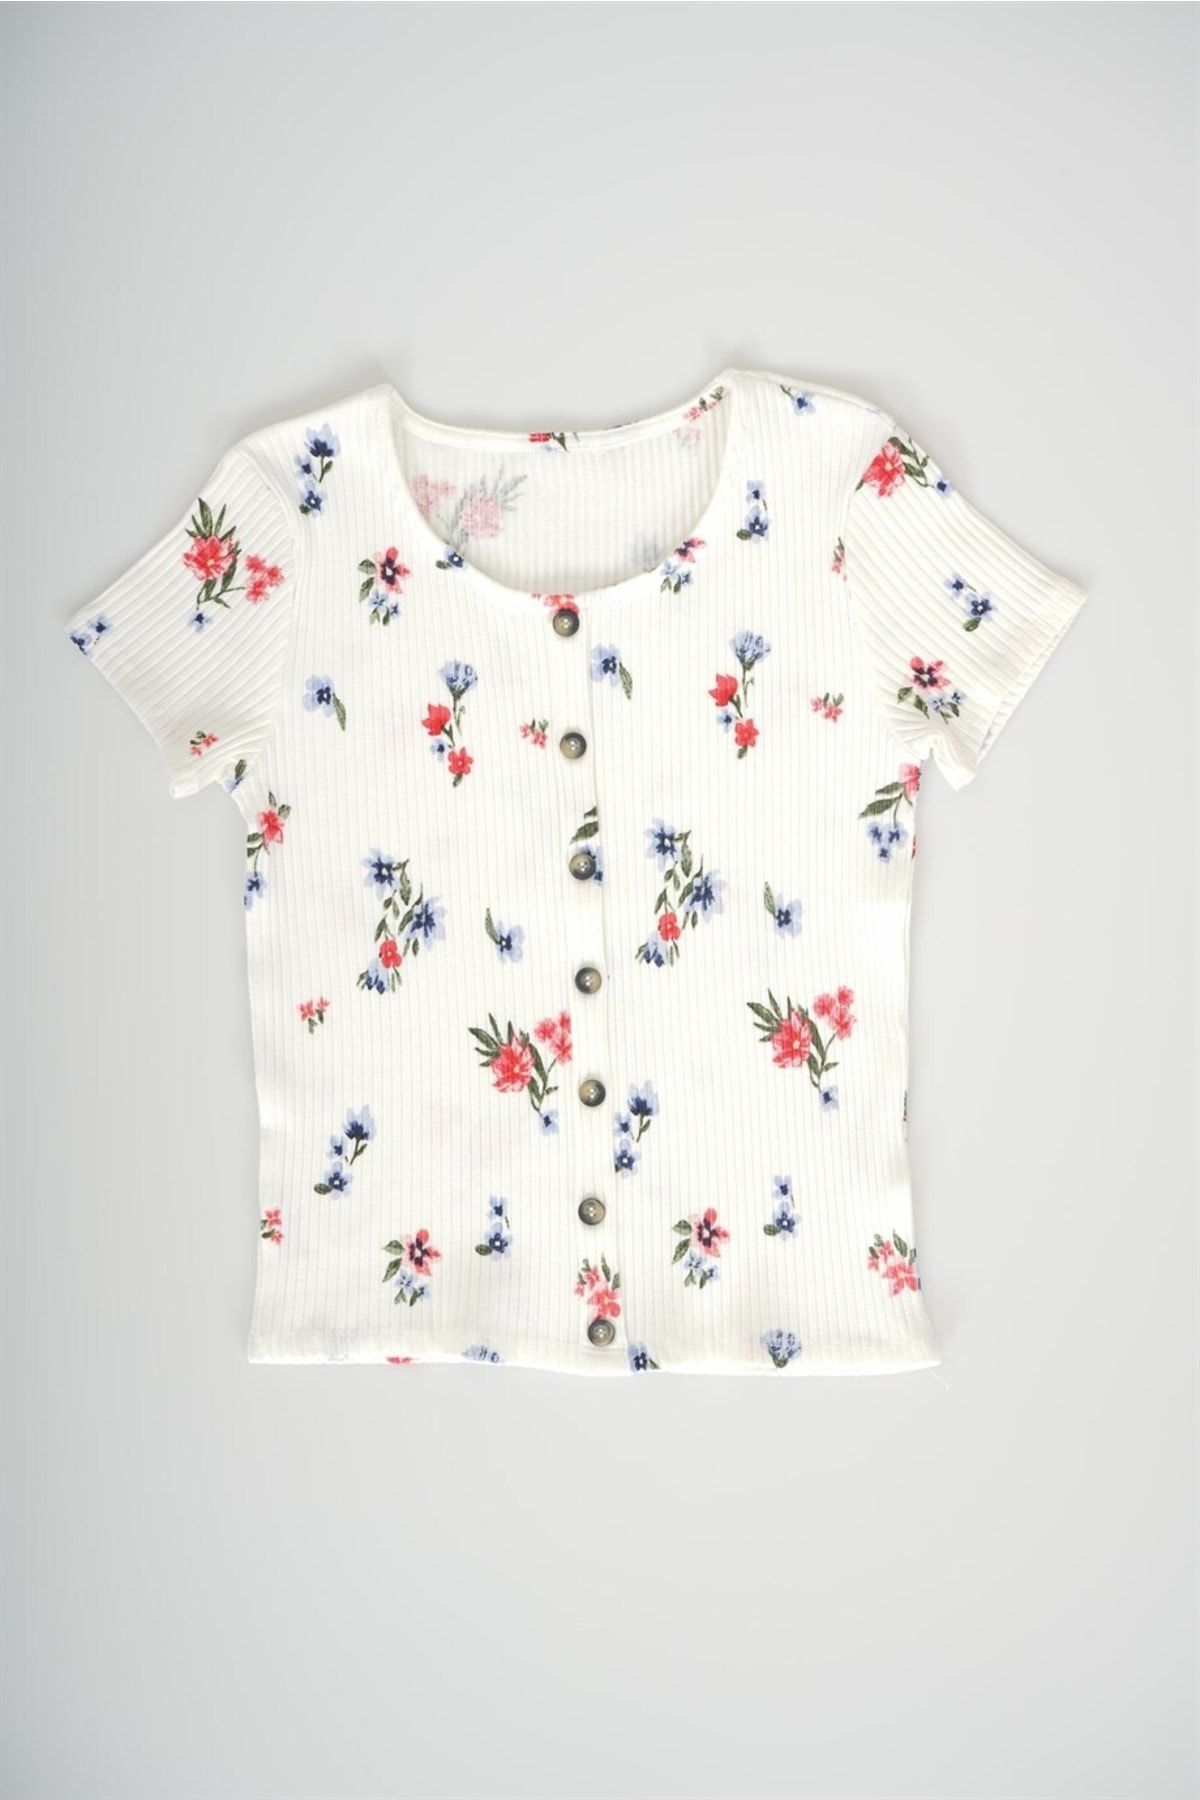 MİNİKO KİDS Kız Çocuk Yarım Kol Çiçek Desenli Pamuk Fitilli Tişört